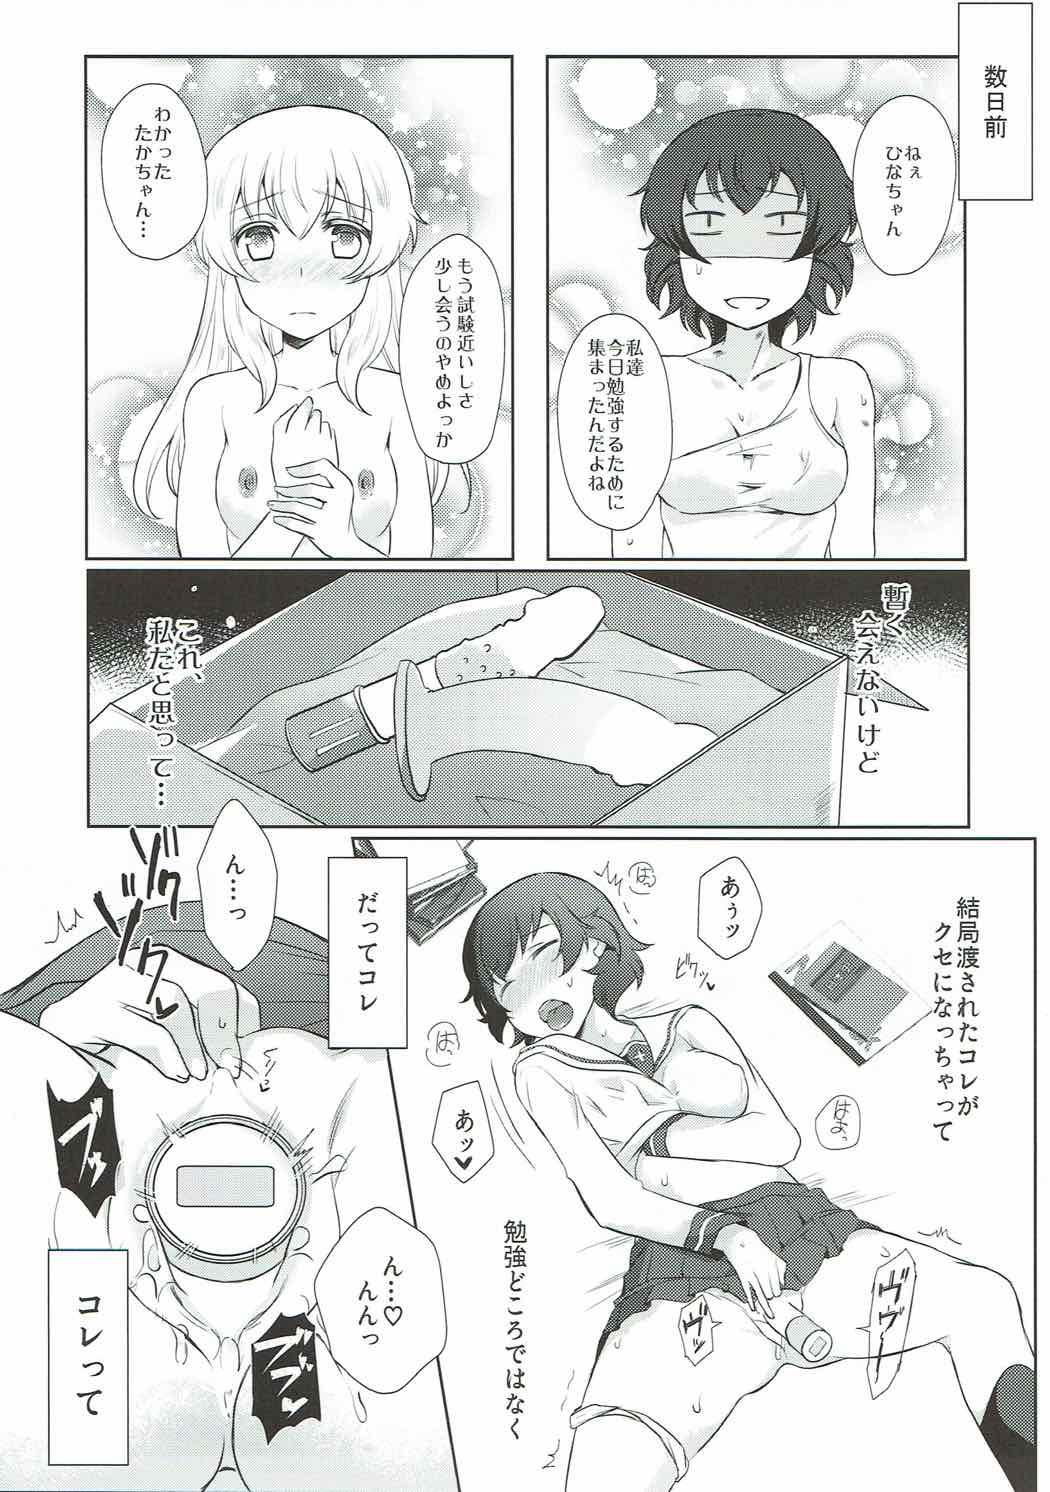 Fist Dakara Watashi wa Sotsugyou dekinai! - Girls und panzer Babes - Page 4